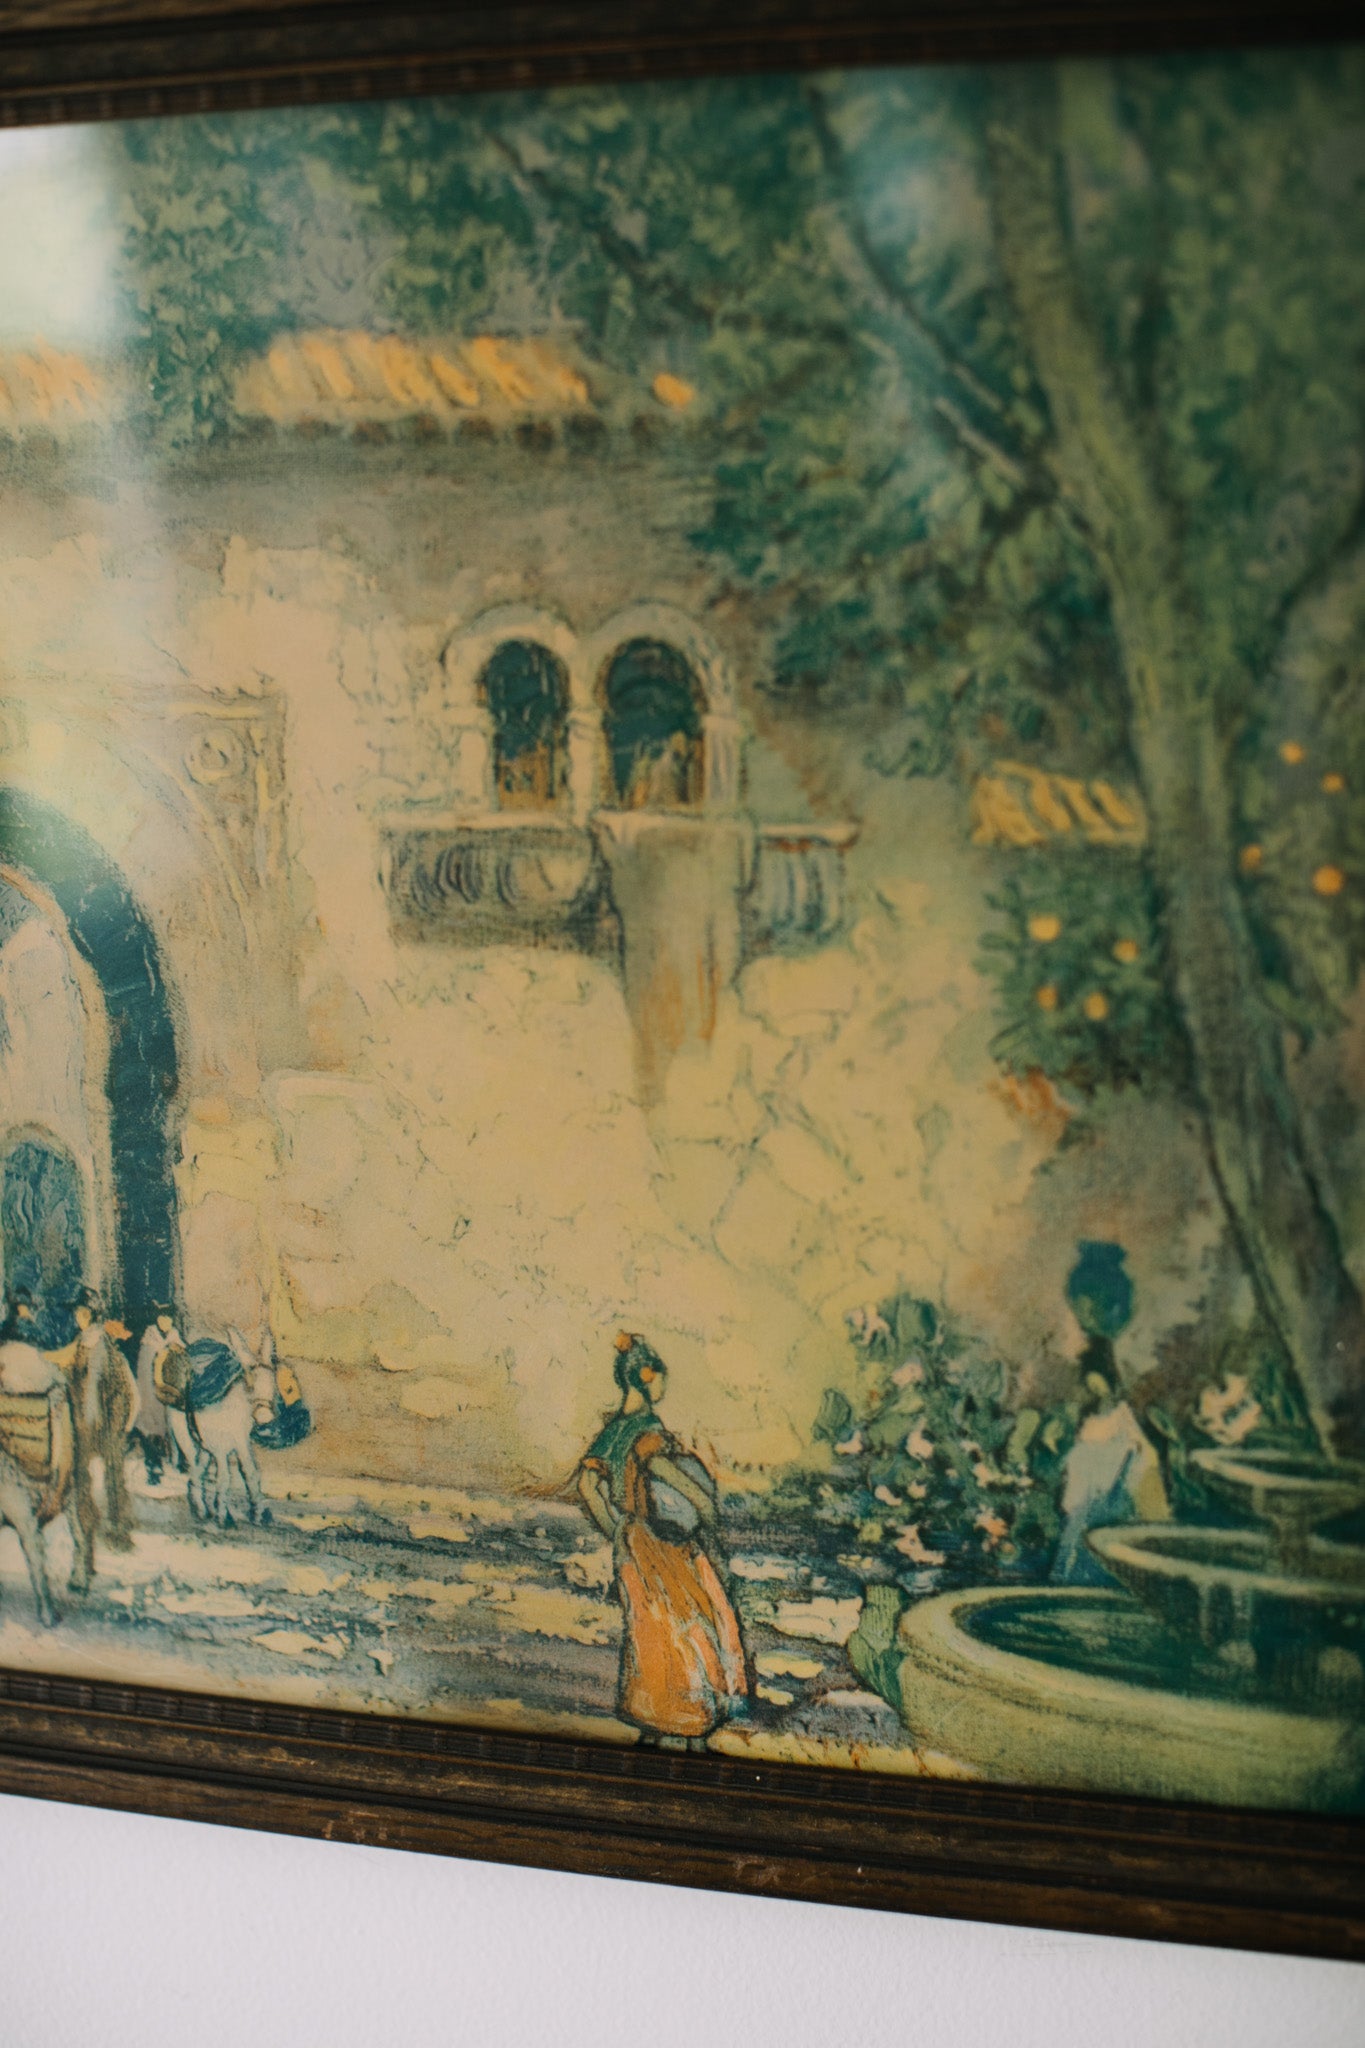 Vintage Mediterranean Village Print